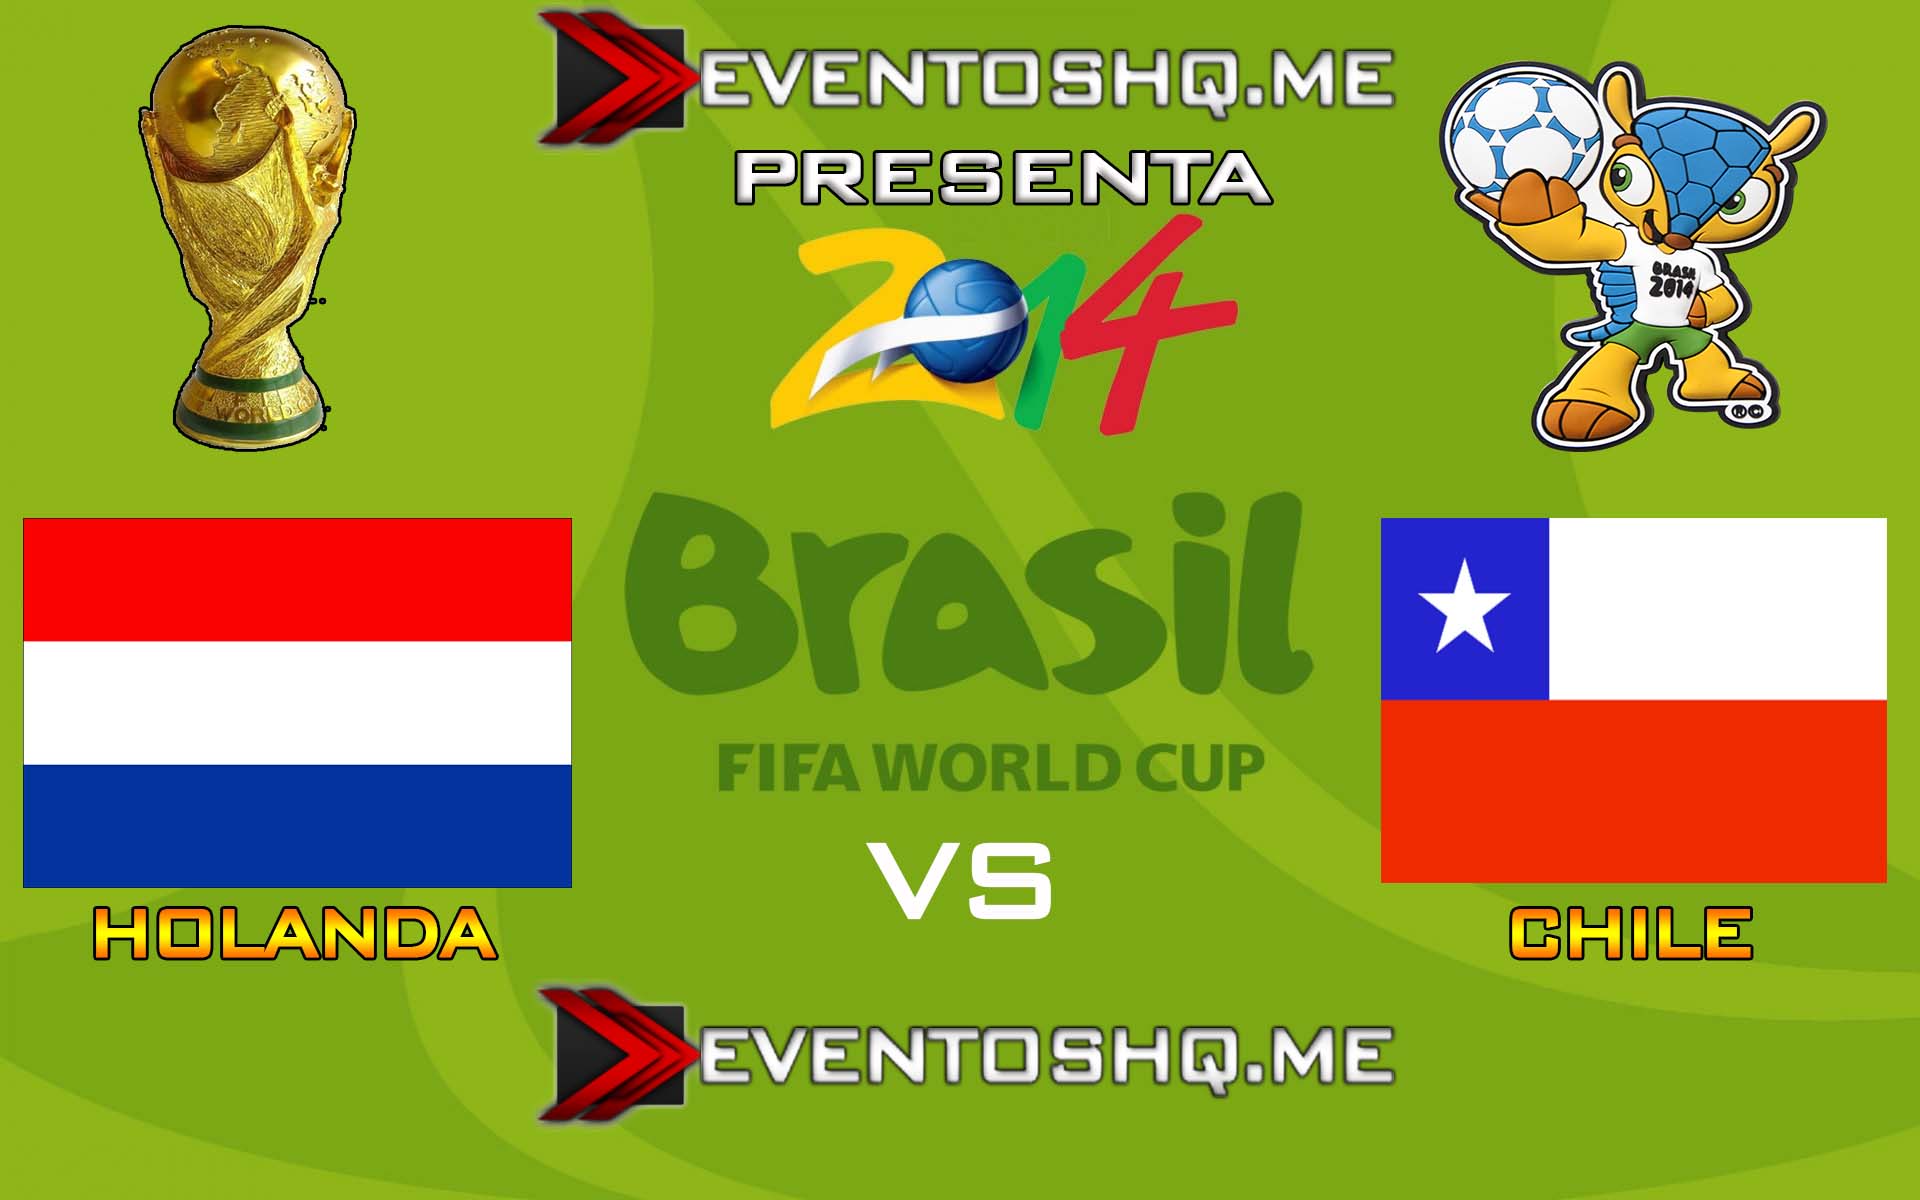 Ver en Vivo Holanda vs Chile Mundial Brasil 2014 www.eventoshq.me